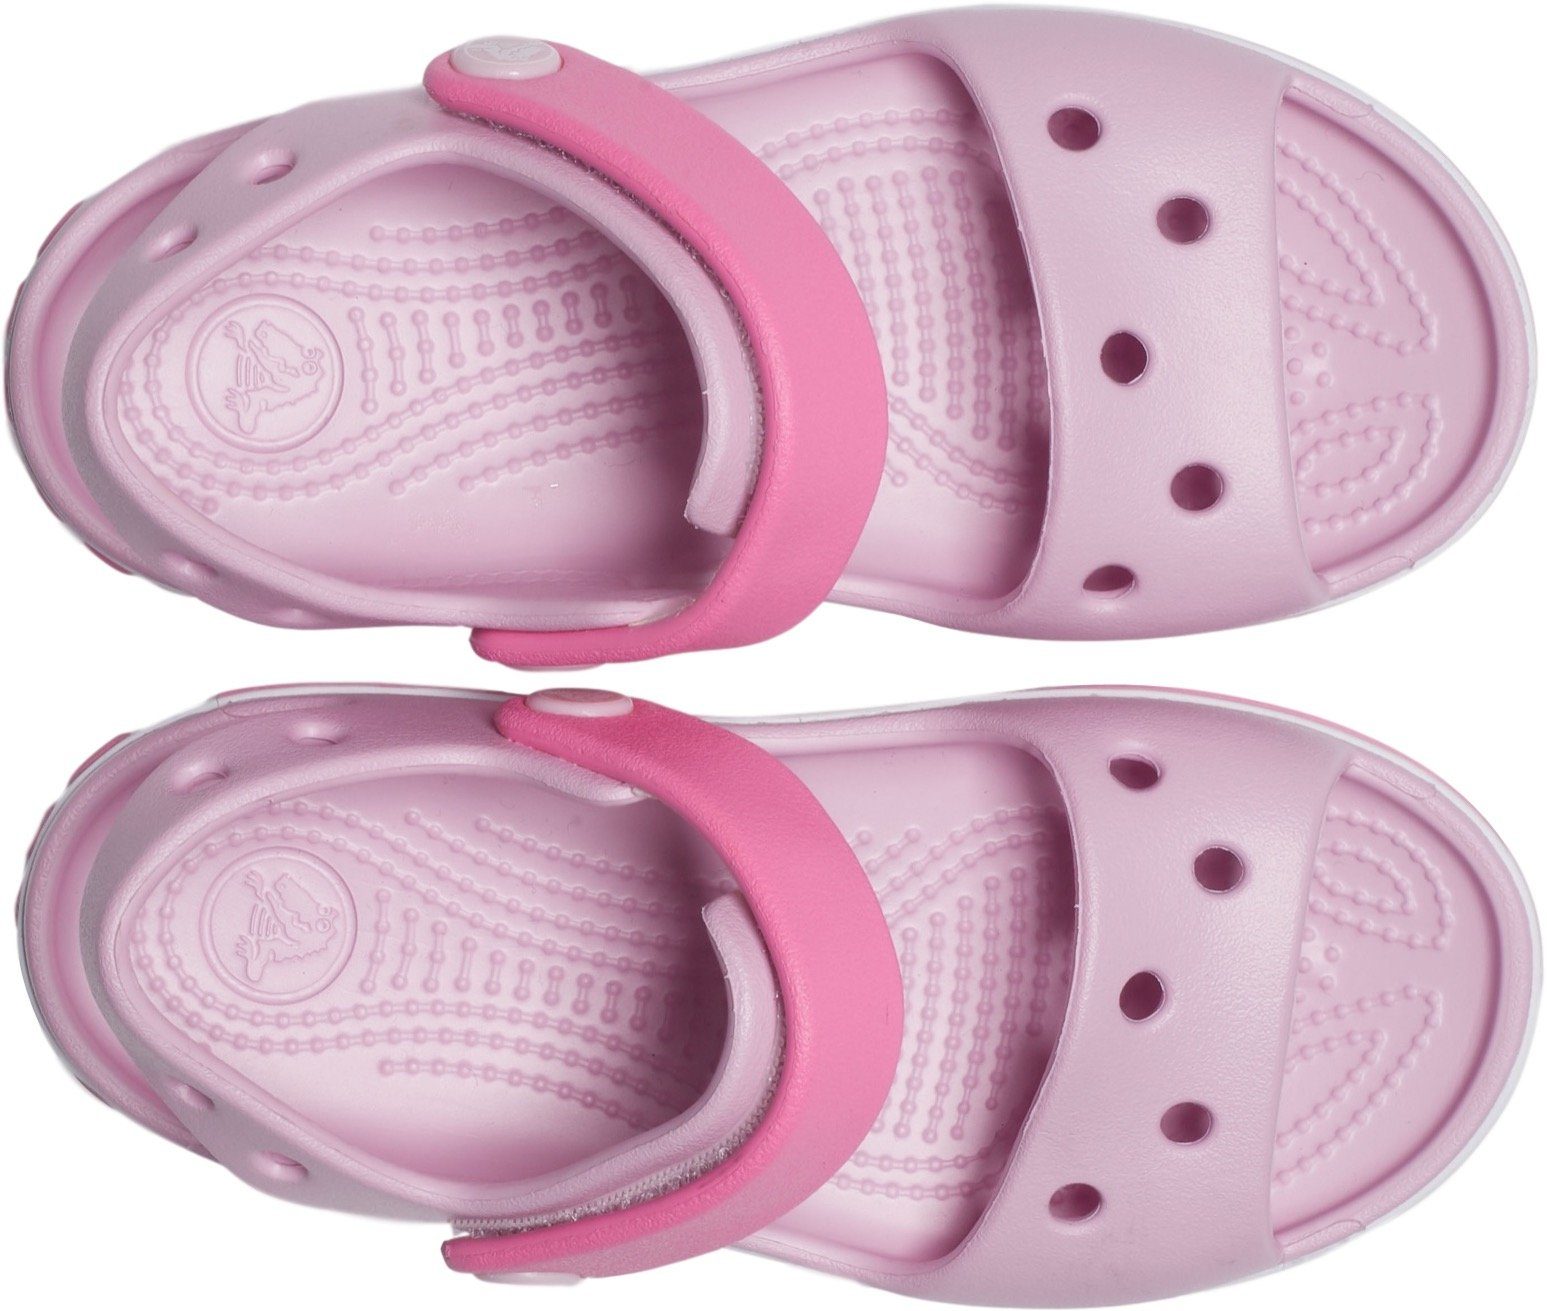 Badesandale praktischem Klettverschluss Crocband Crocs mit rosa-pink